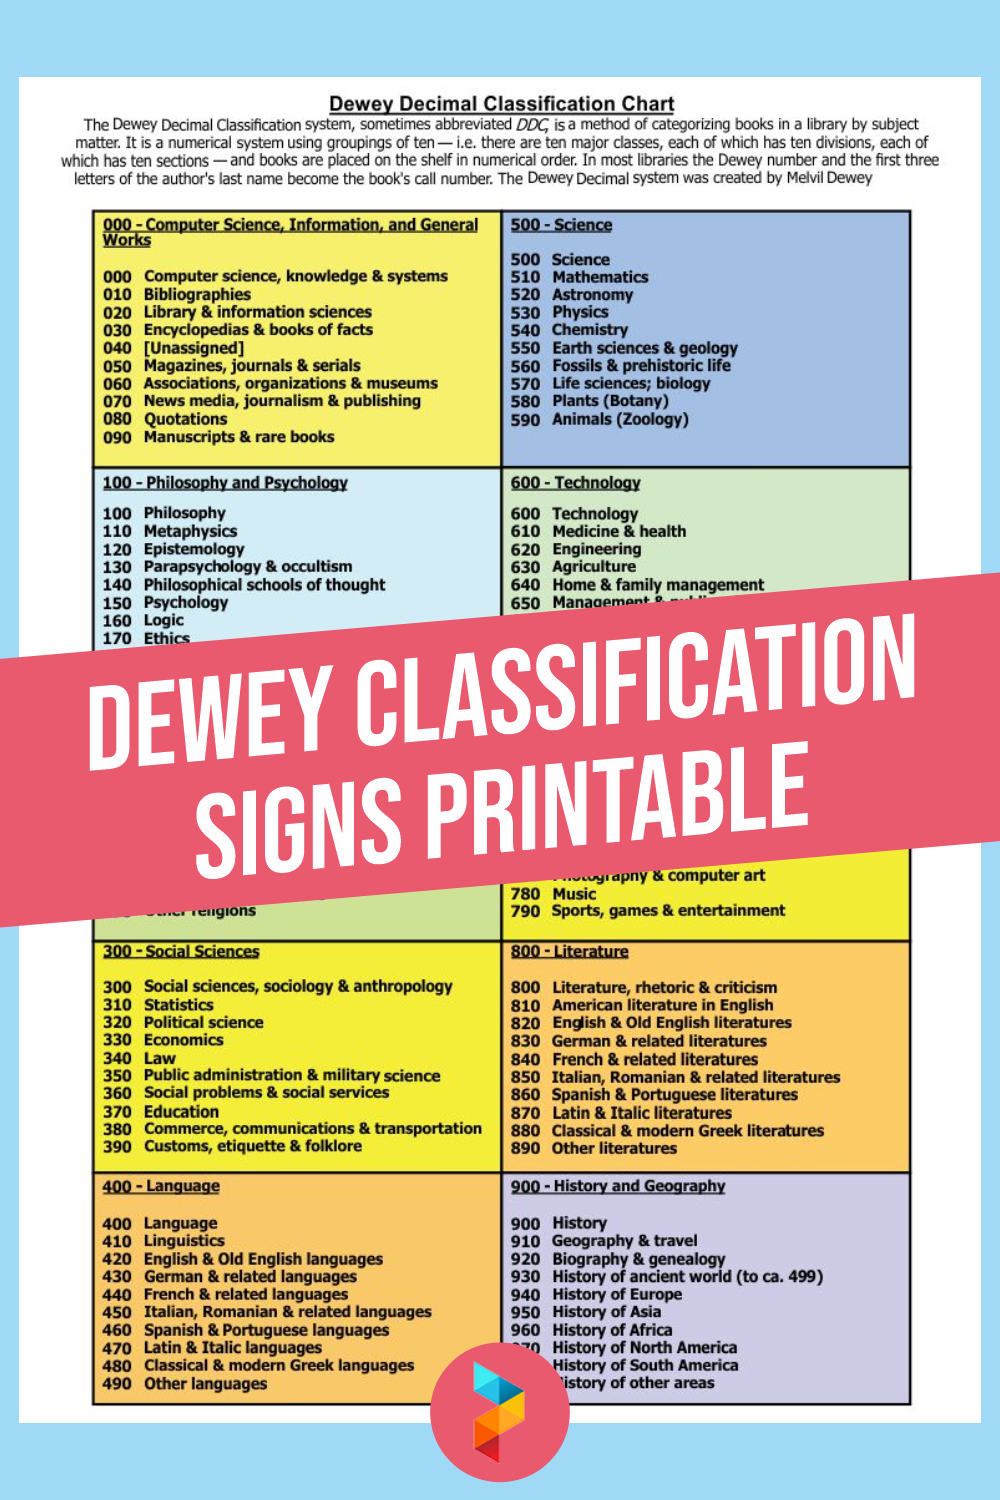 Dewey Classification Signs Printable